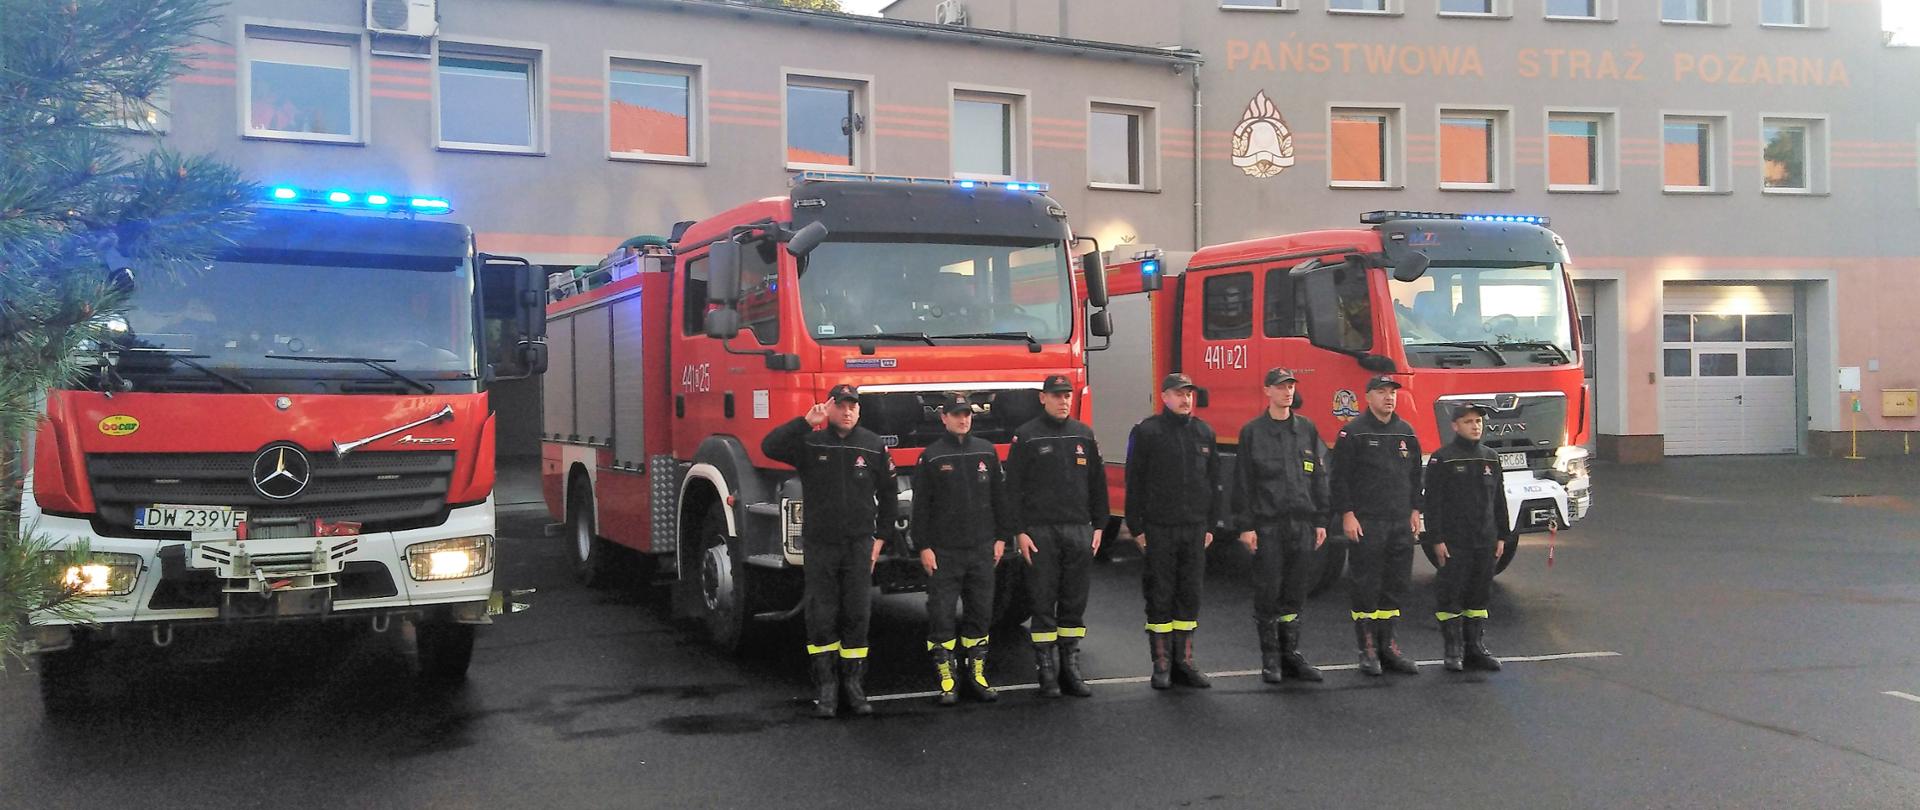 Obraz przedstawia strażaków JRG Jawor podczas minuty ciszy dla zmarłego strażaka z OSP, który zginął podczas prowadzenia działań ratowniczych. Straży w umundurowaniu koszarowym na tle pojazdów pożarniczych i budynku komendy.